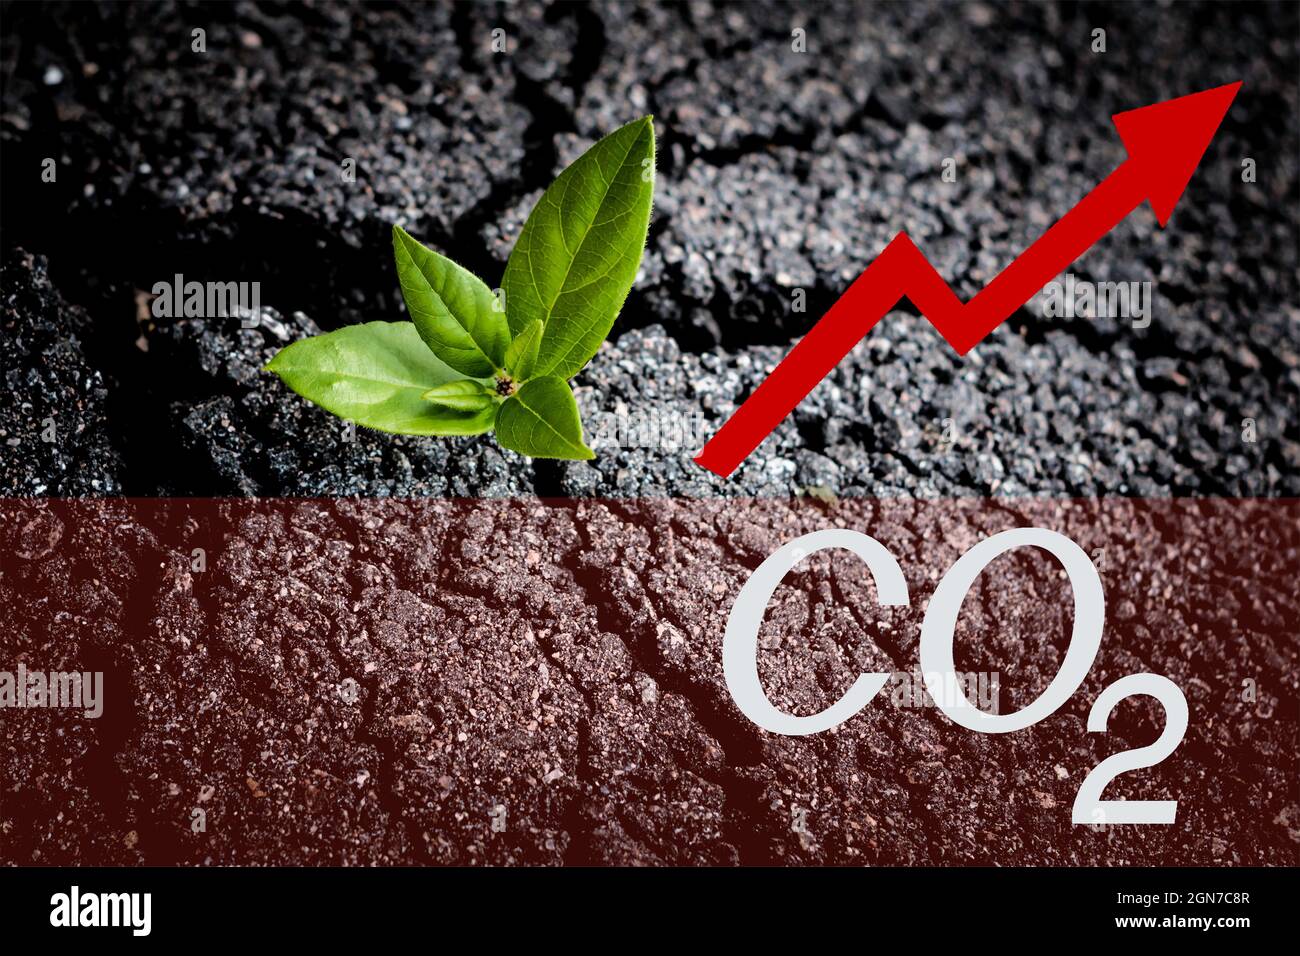 Steigender Kohlendioxidspiegel. Ökologische Katastrophe und Konzept der globalen Erwärmung. Warnschild CO2-Anstieg und grüne Pflanze auf gesprungenem Asphalt Stockfoto